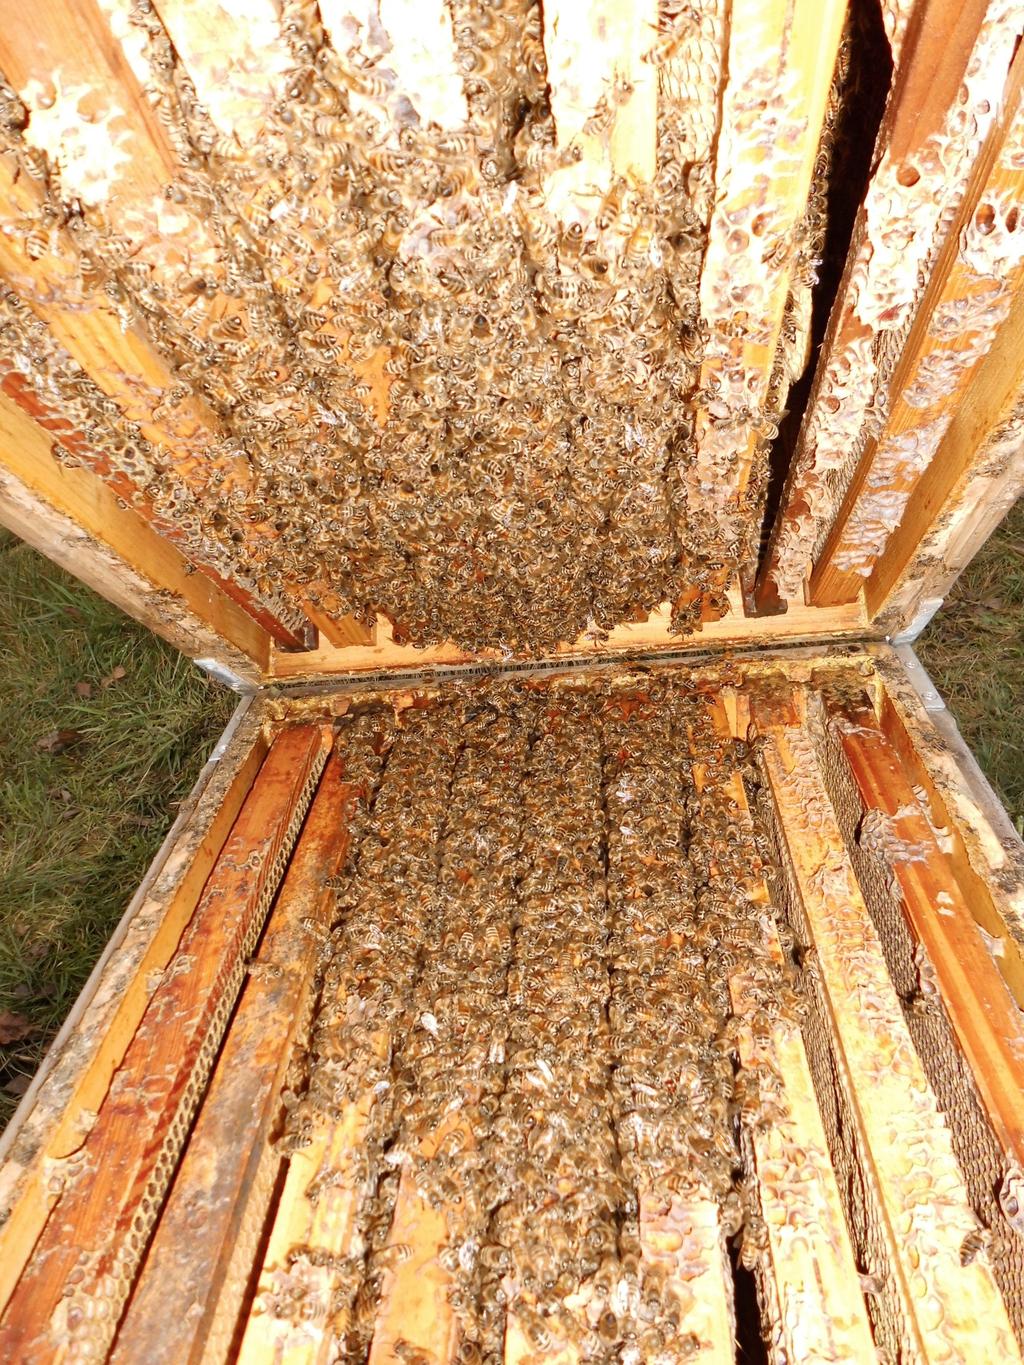 Winterlicher Futterbedarf Im Winter ernähren sich die Bienen von dem im Bienenstock eingelagerten Futter.